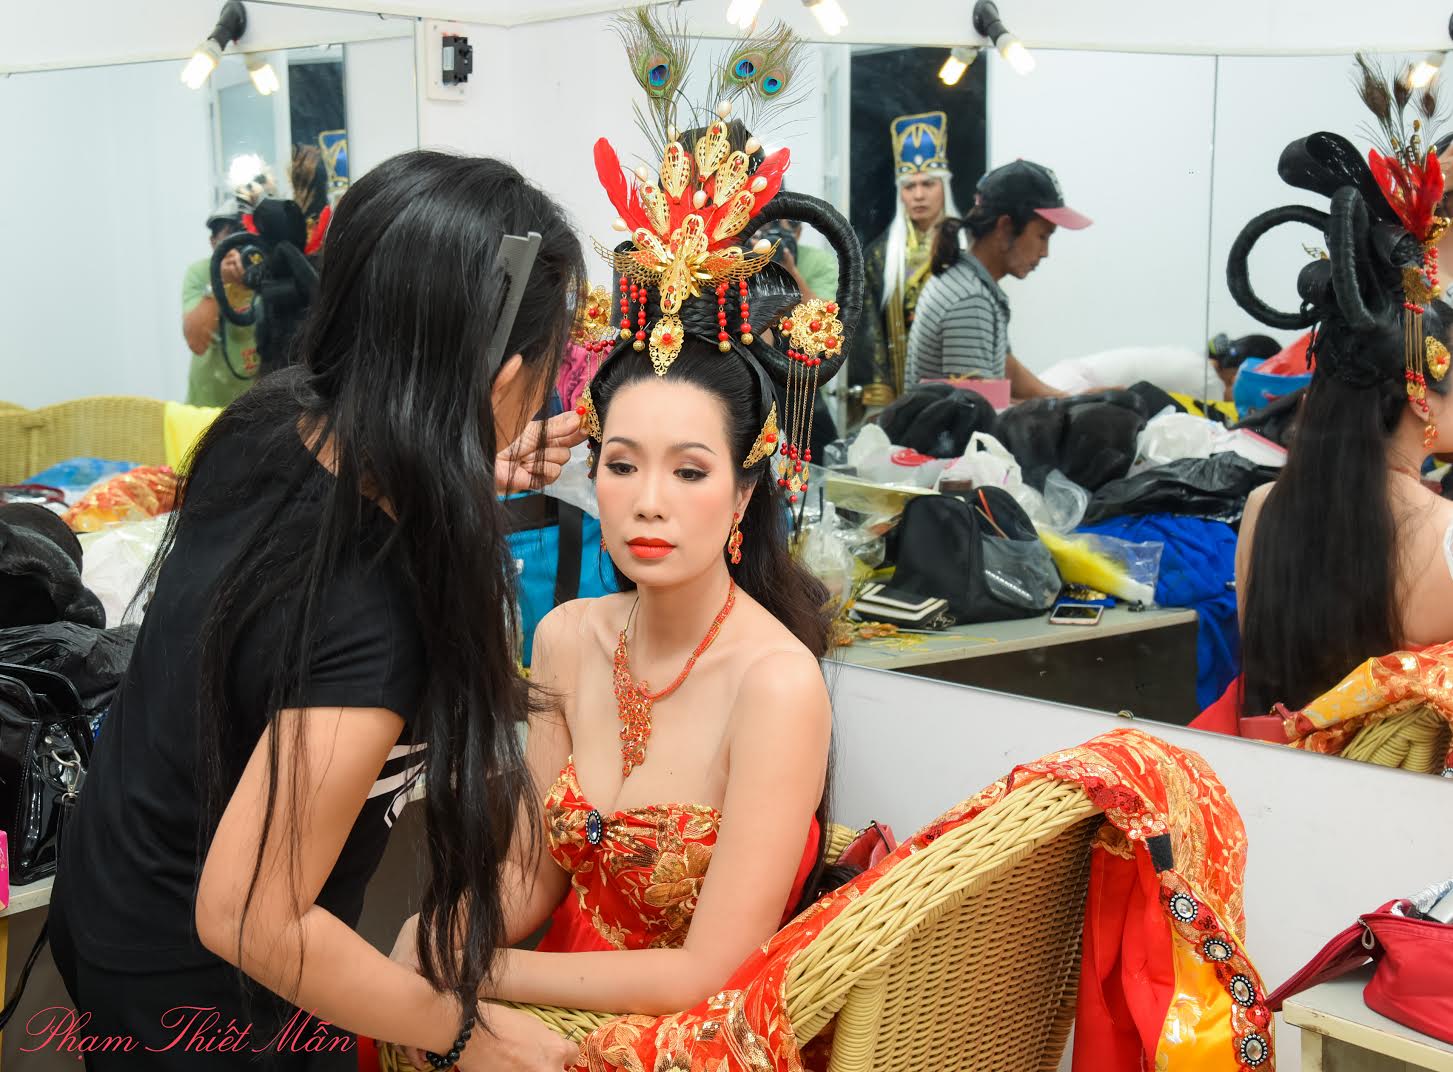 Trang phục tôn vòng một của nhân vật Hoàng hậu do Trịnh Kim Chi thủ vai làm khán giả liên tưởng đến nhận vật Võ Tắc Thiên của Phạm Băng Băng